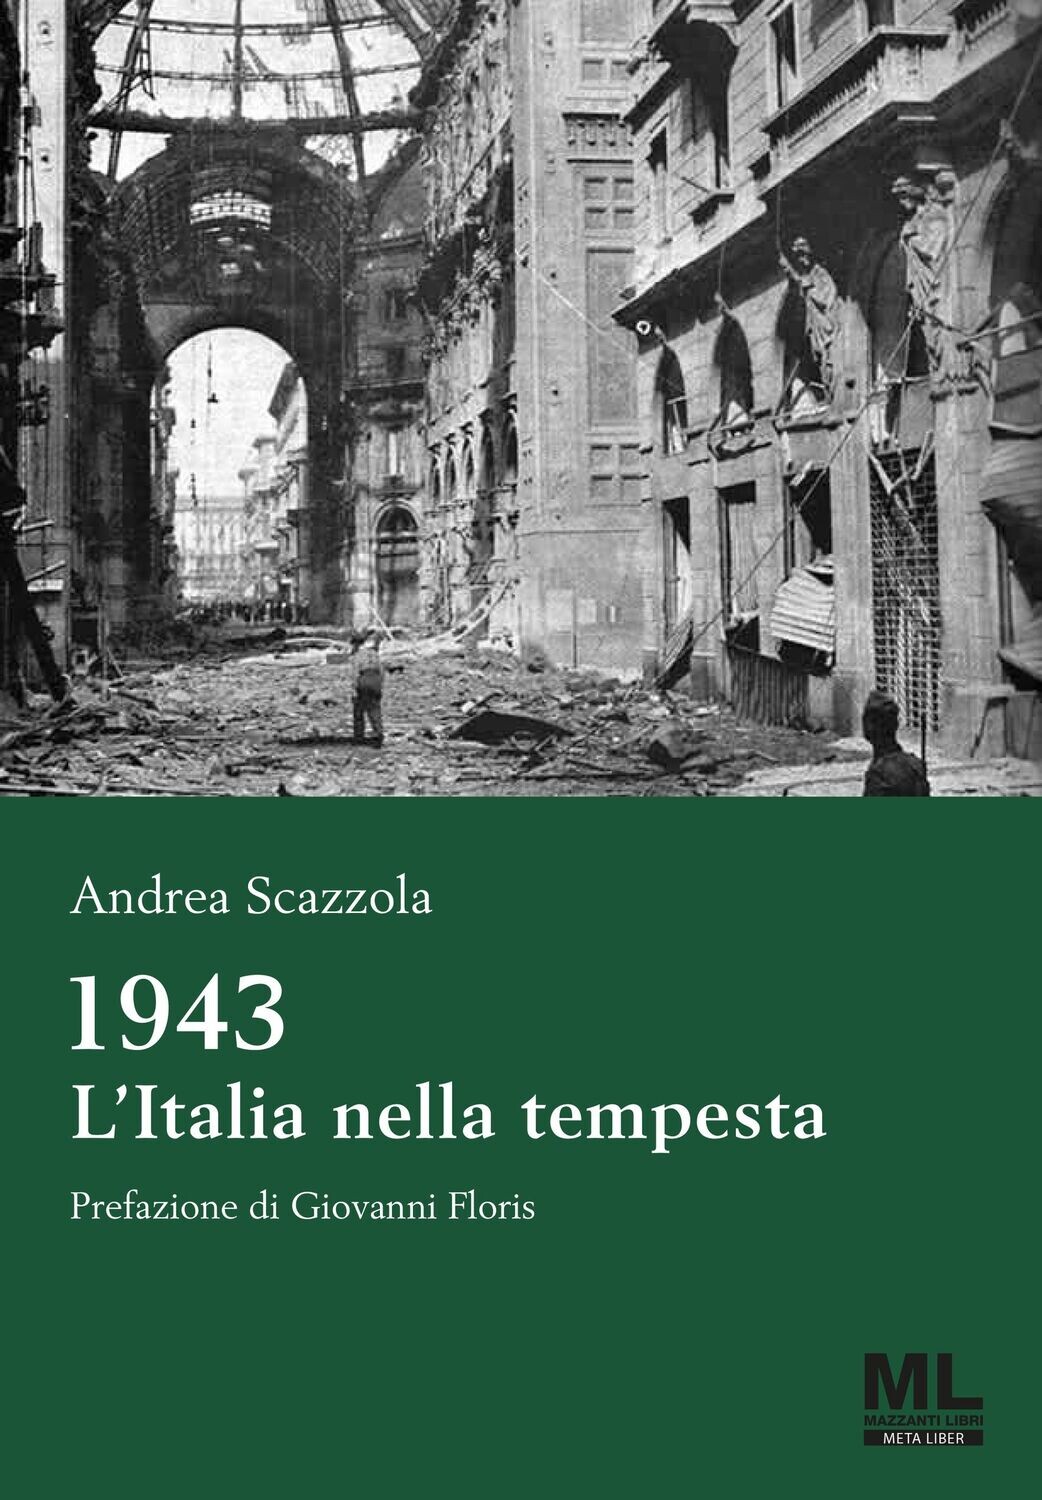 1943. L'Italia nella tempesta (MetaLiber©)